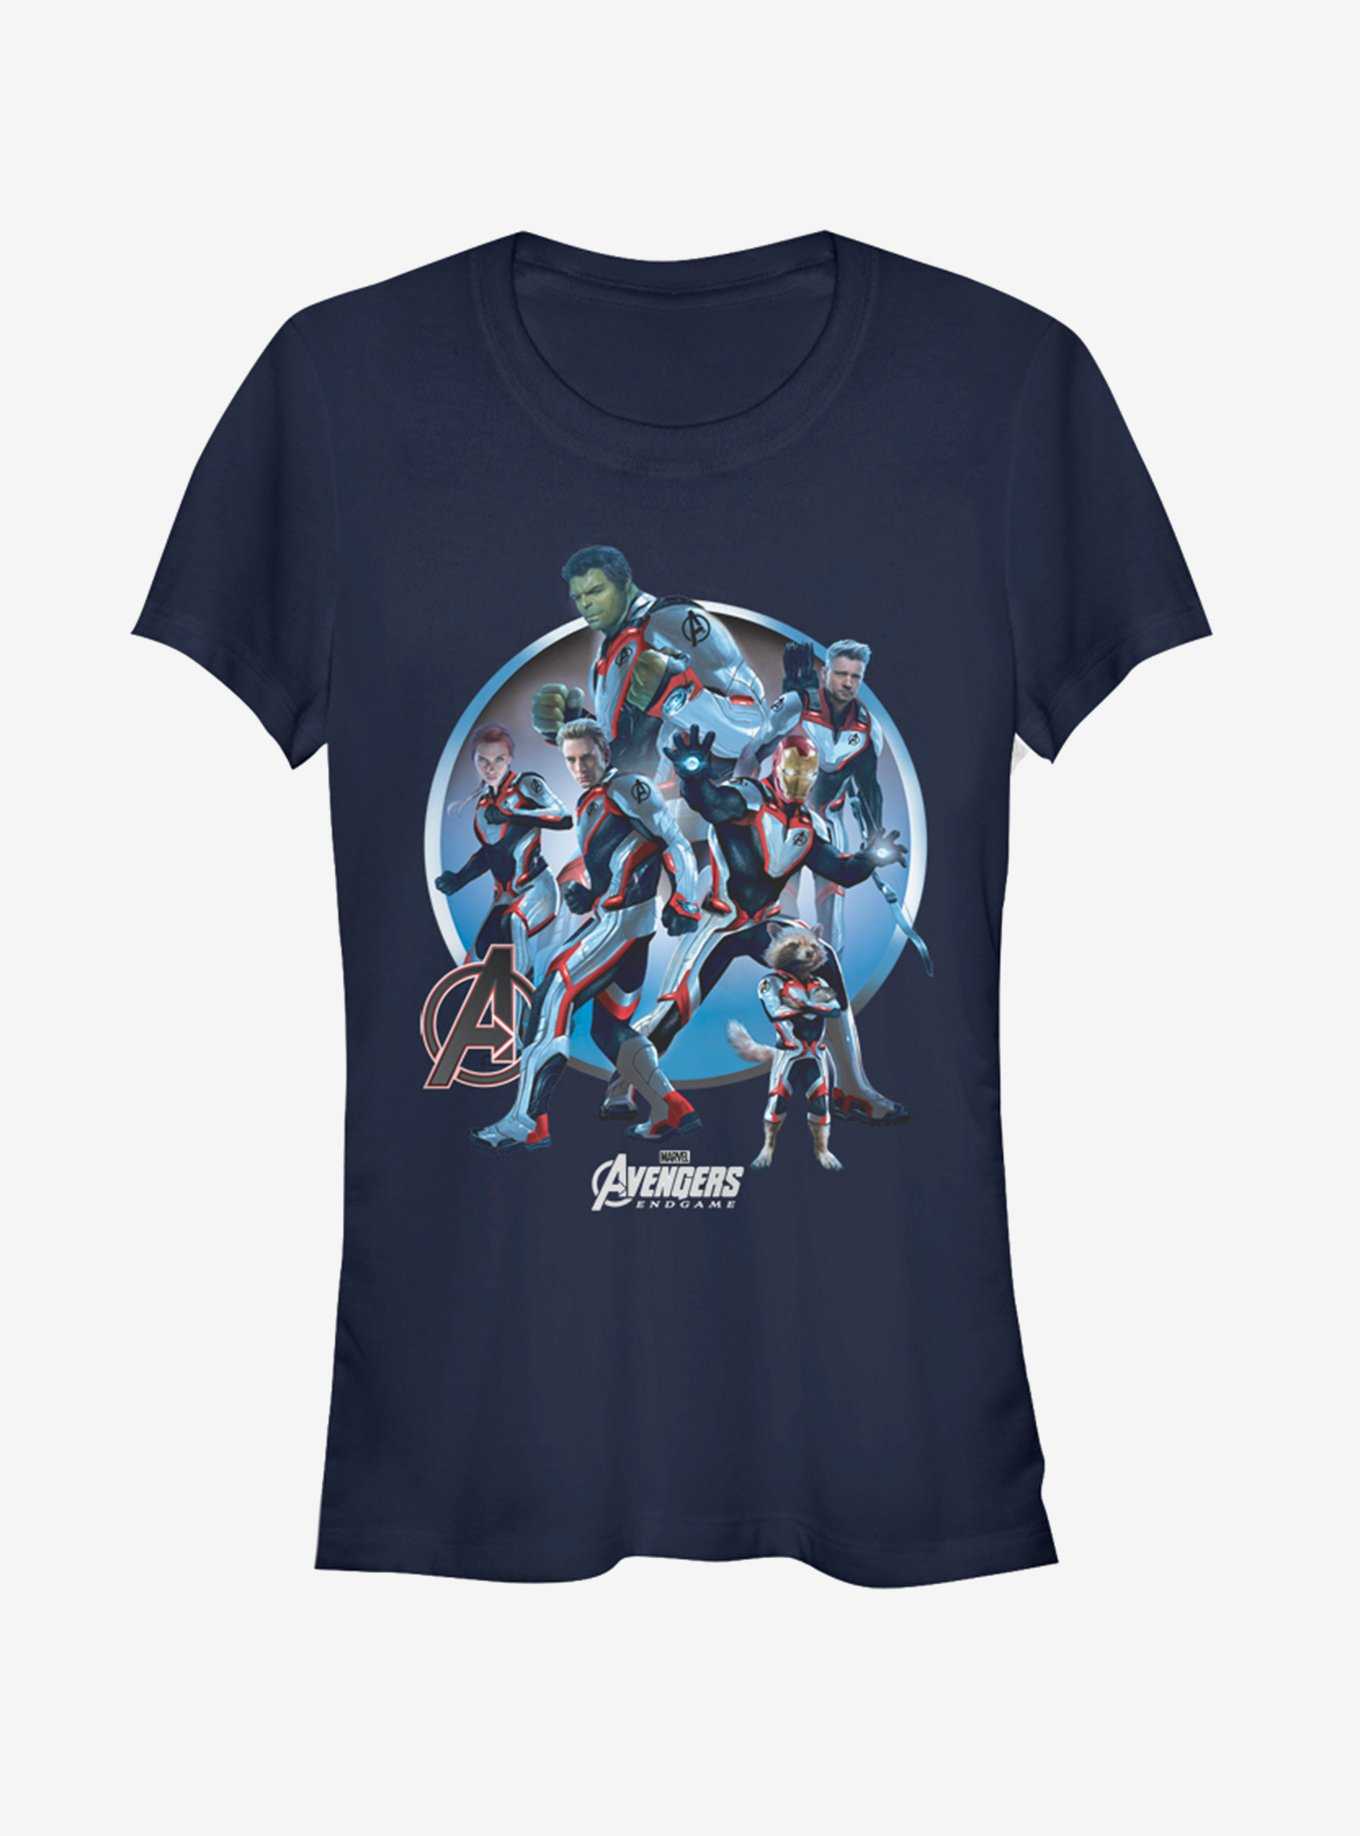 Marvel Avengers: Endgame Unite Girls Navy Blue T-Shirt, , hi-res